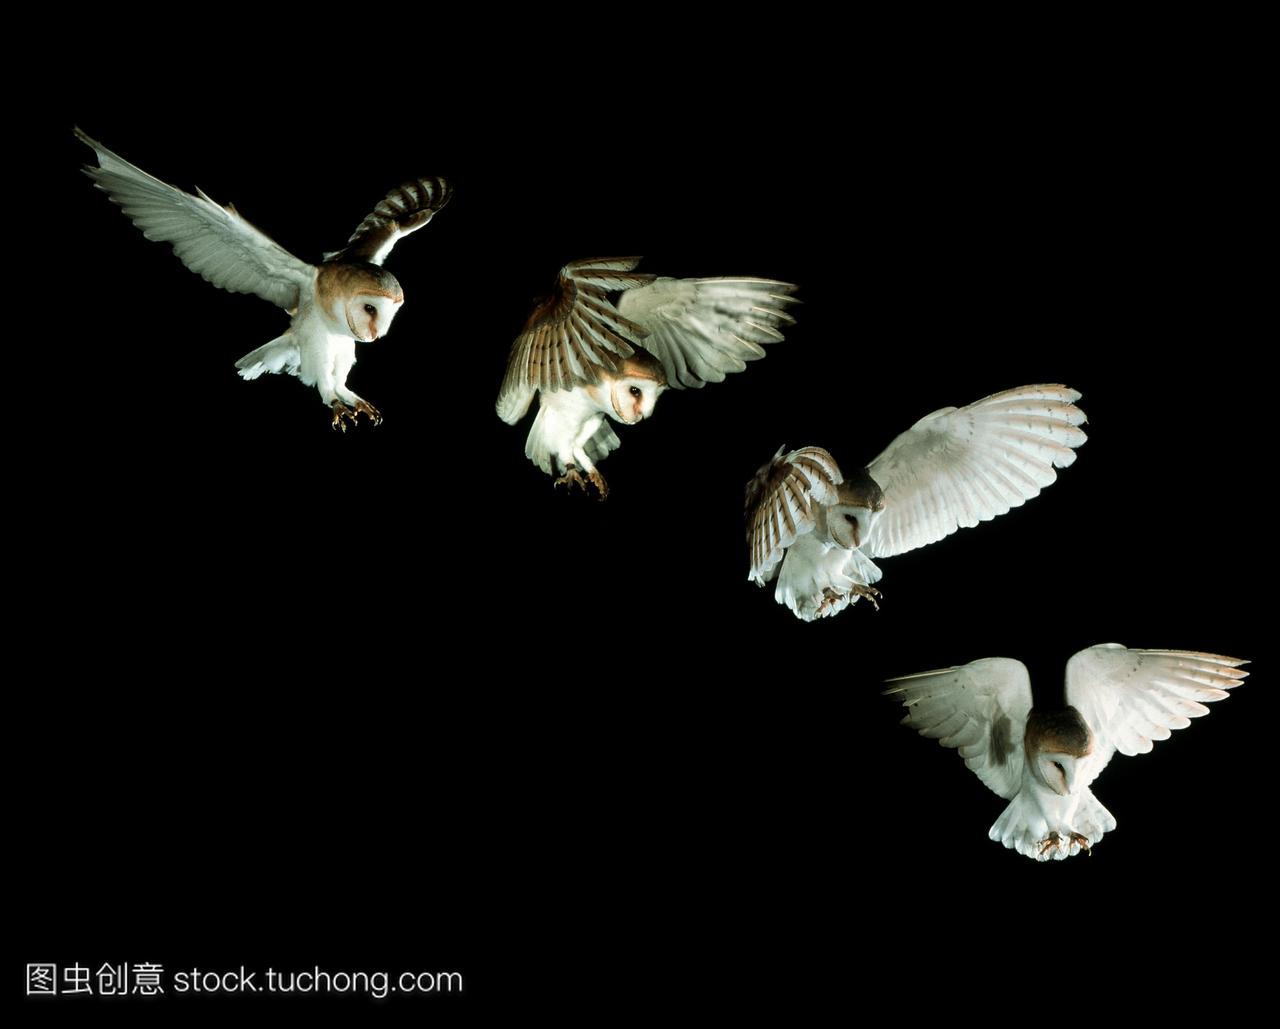 仓鸮合成图像的高速照片欧洲仓鸮tytoalba从空